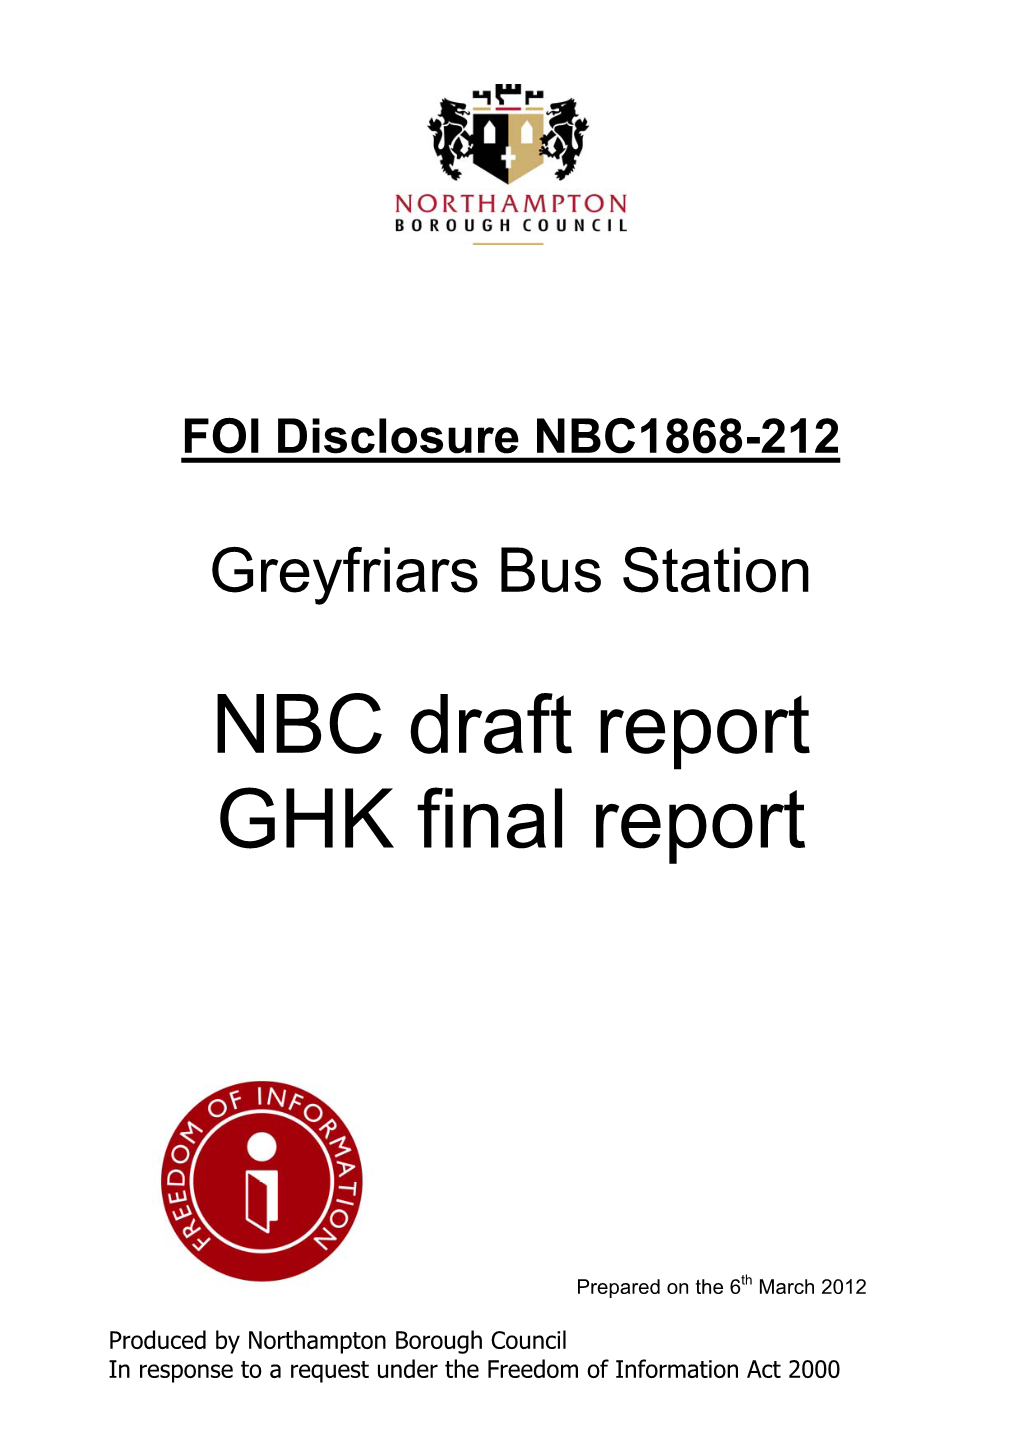 NBC Draft Report GHK Final Report